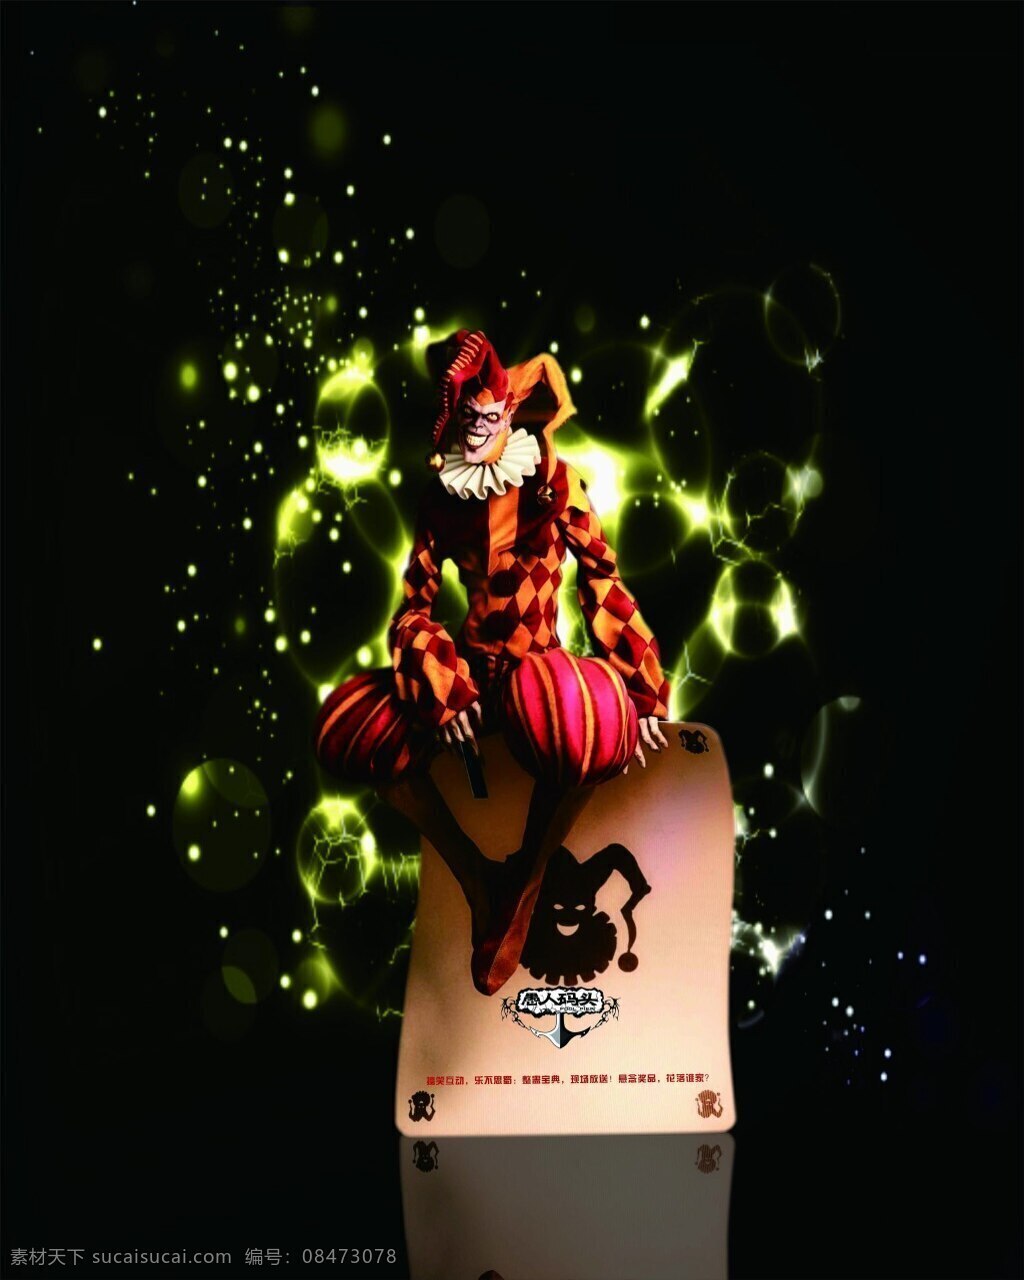 魔术师 小丑 节日 元素 魔幻